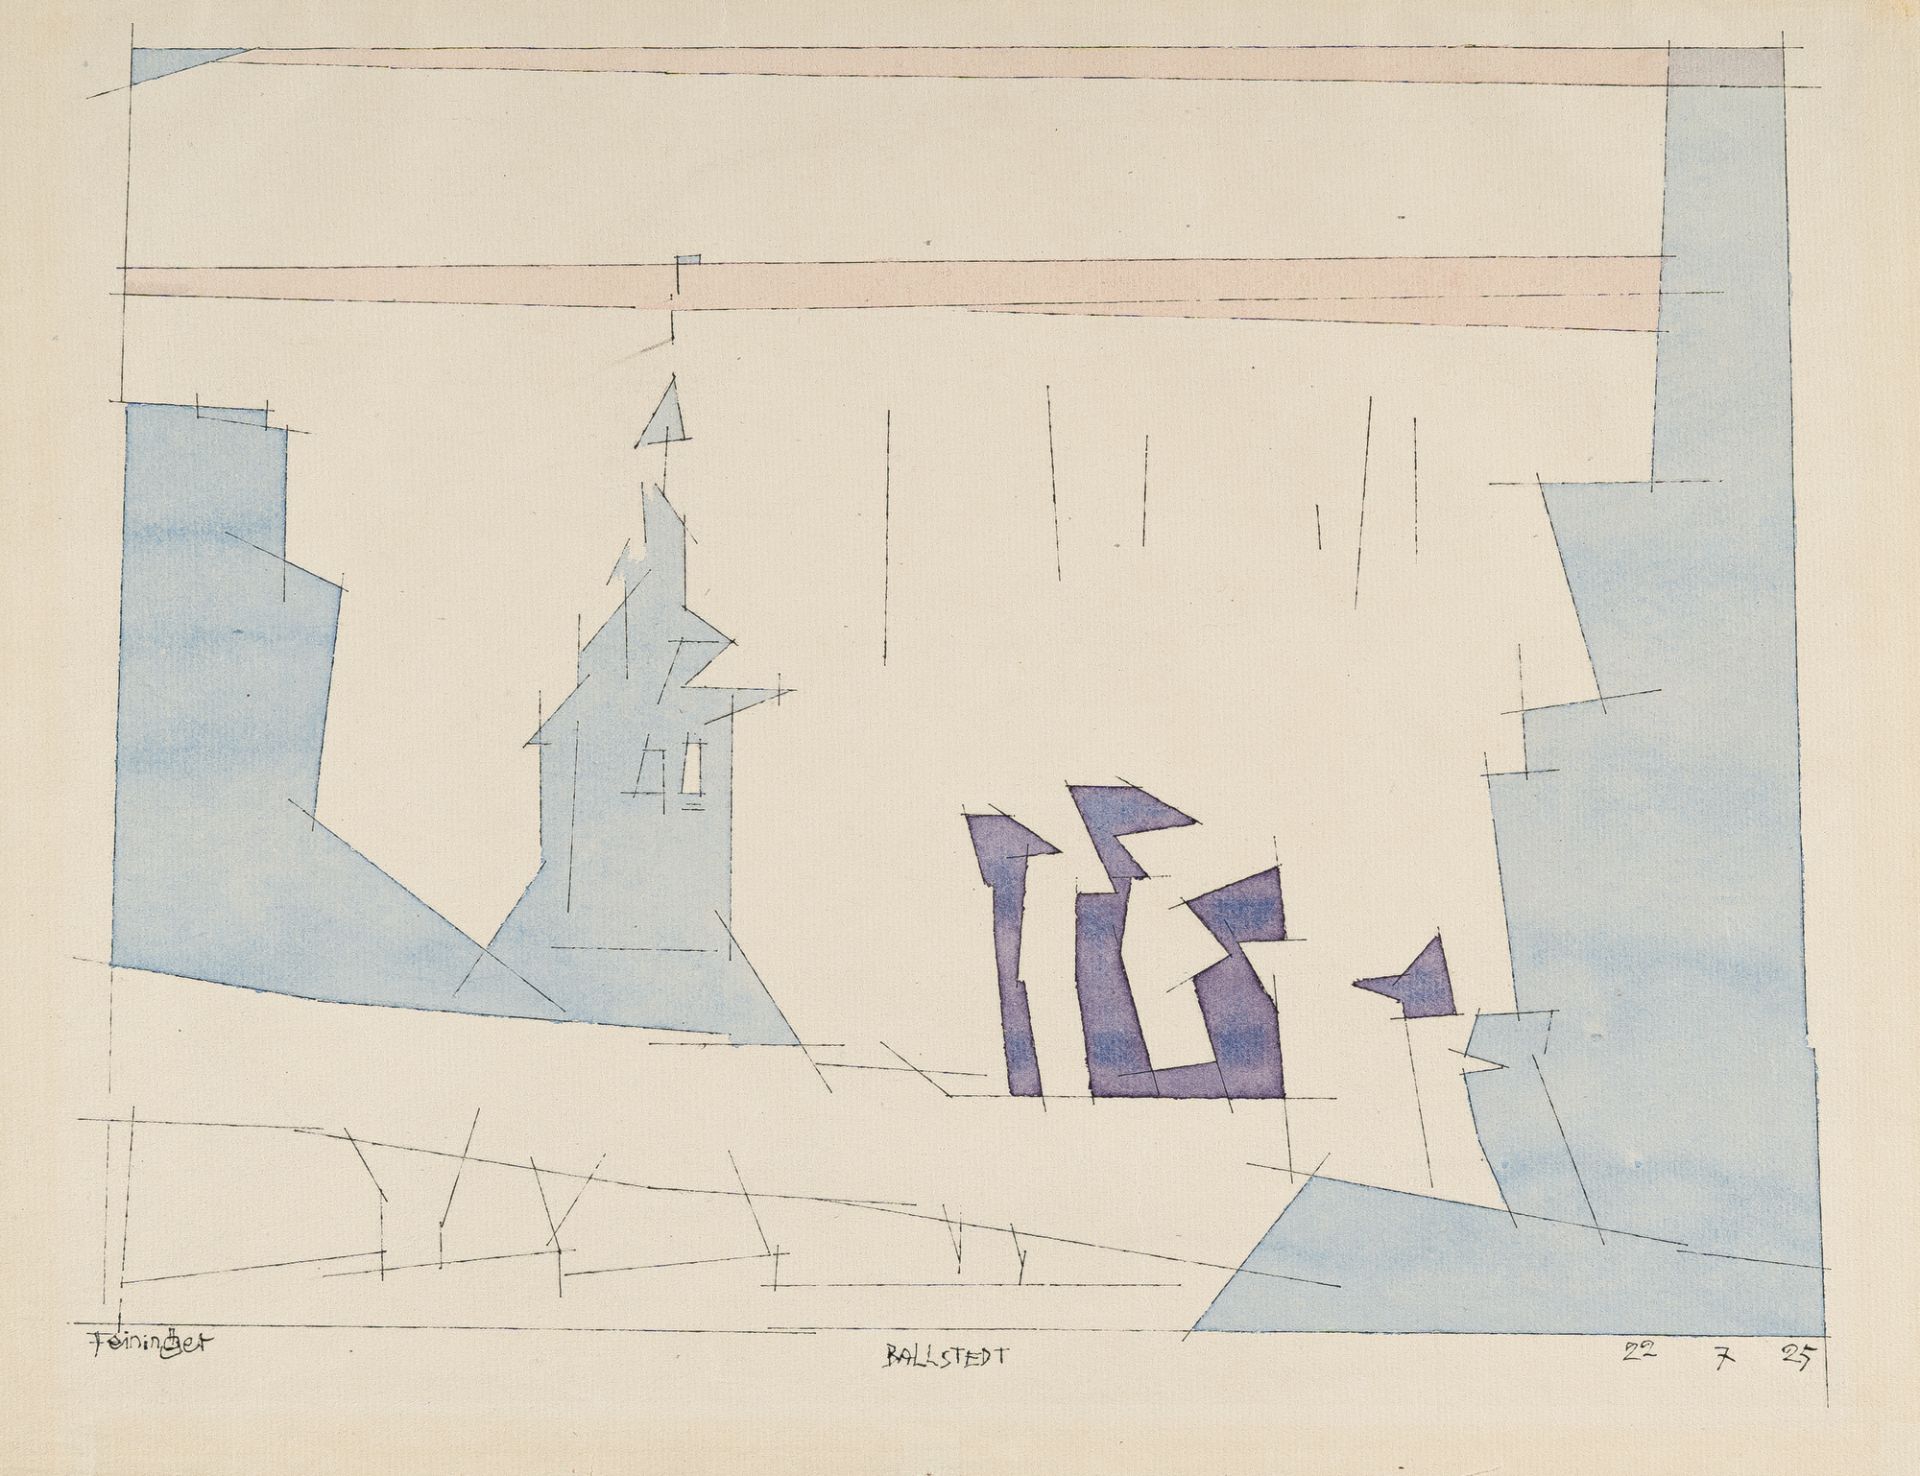 Lyonel Feininger (1871 - New York - 1956) – „Ballstedt“ (“Ballstedt”)